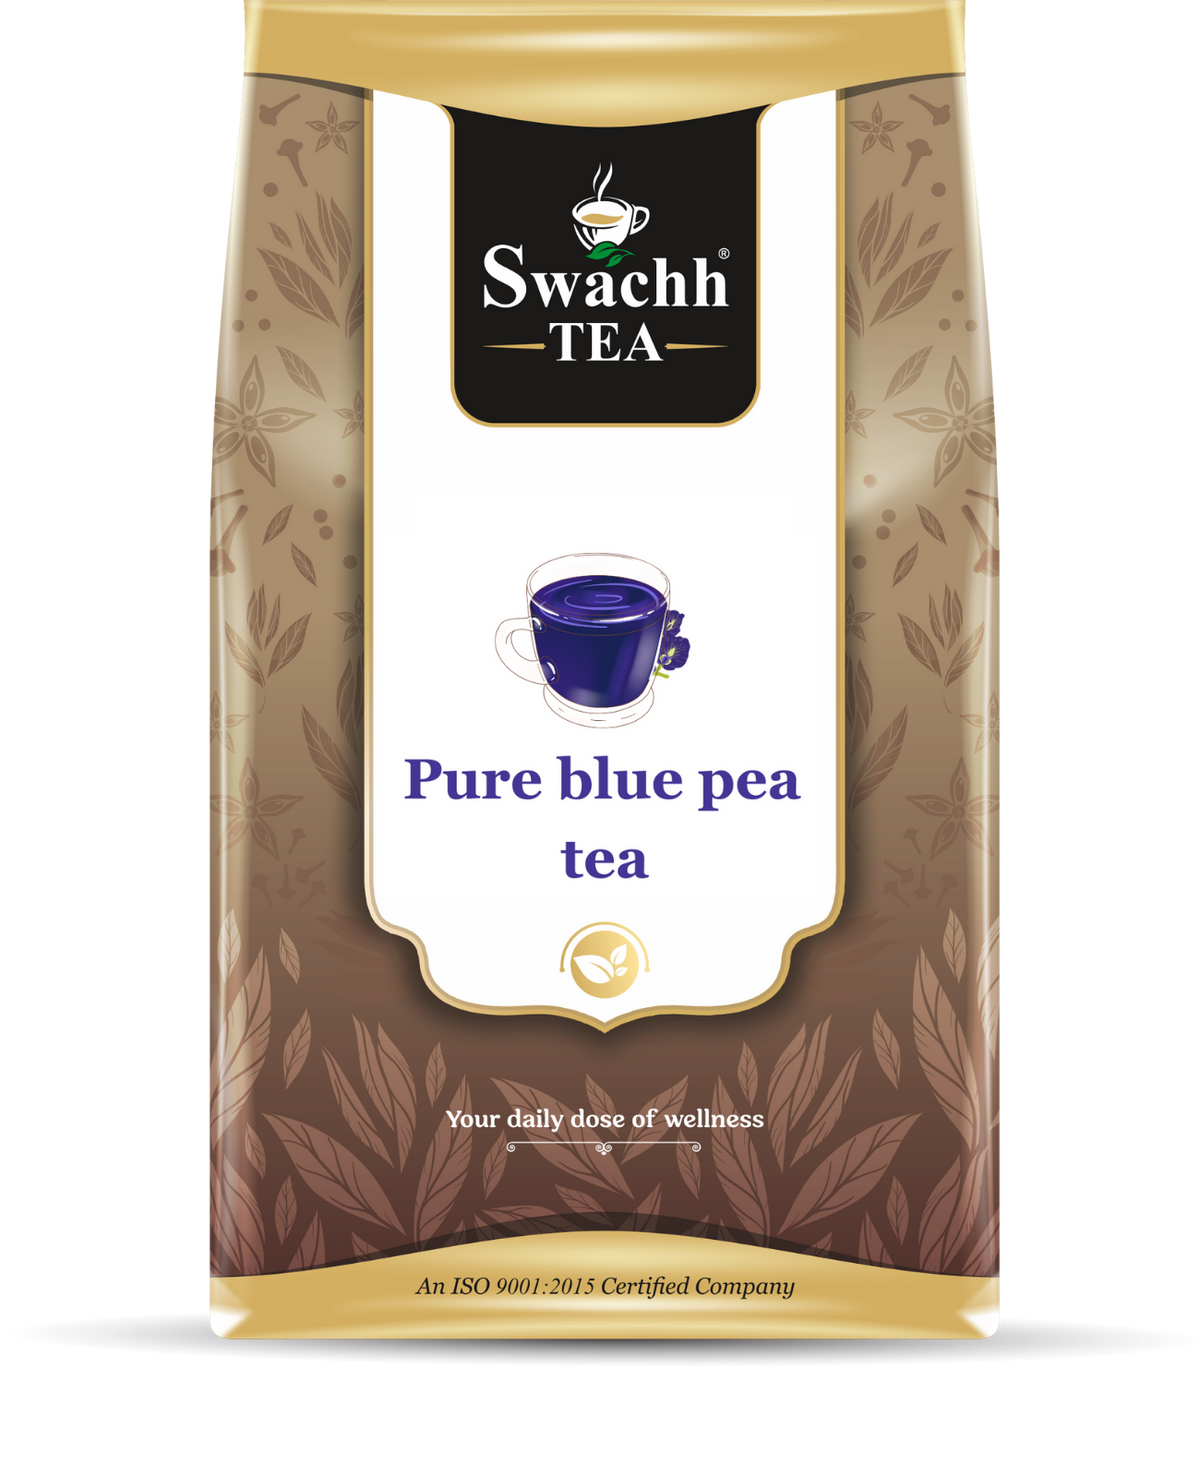 Pure blue pea tea